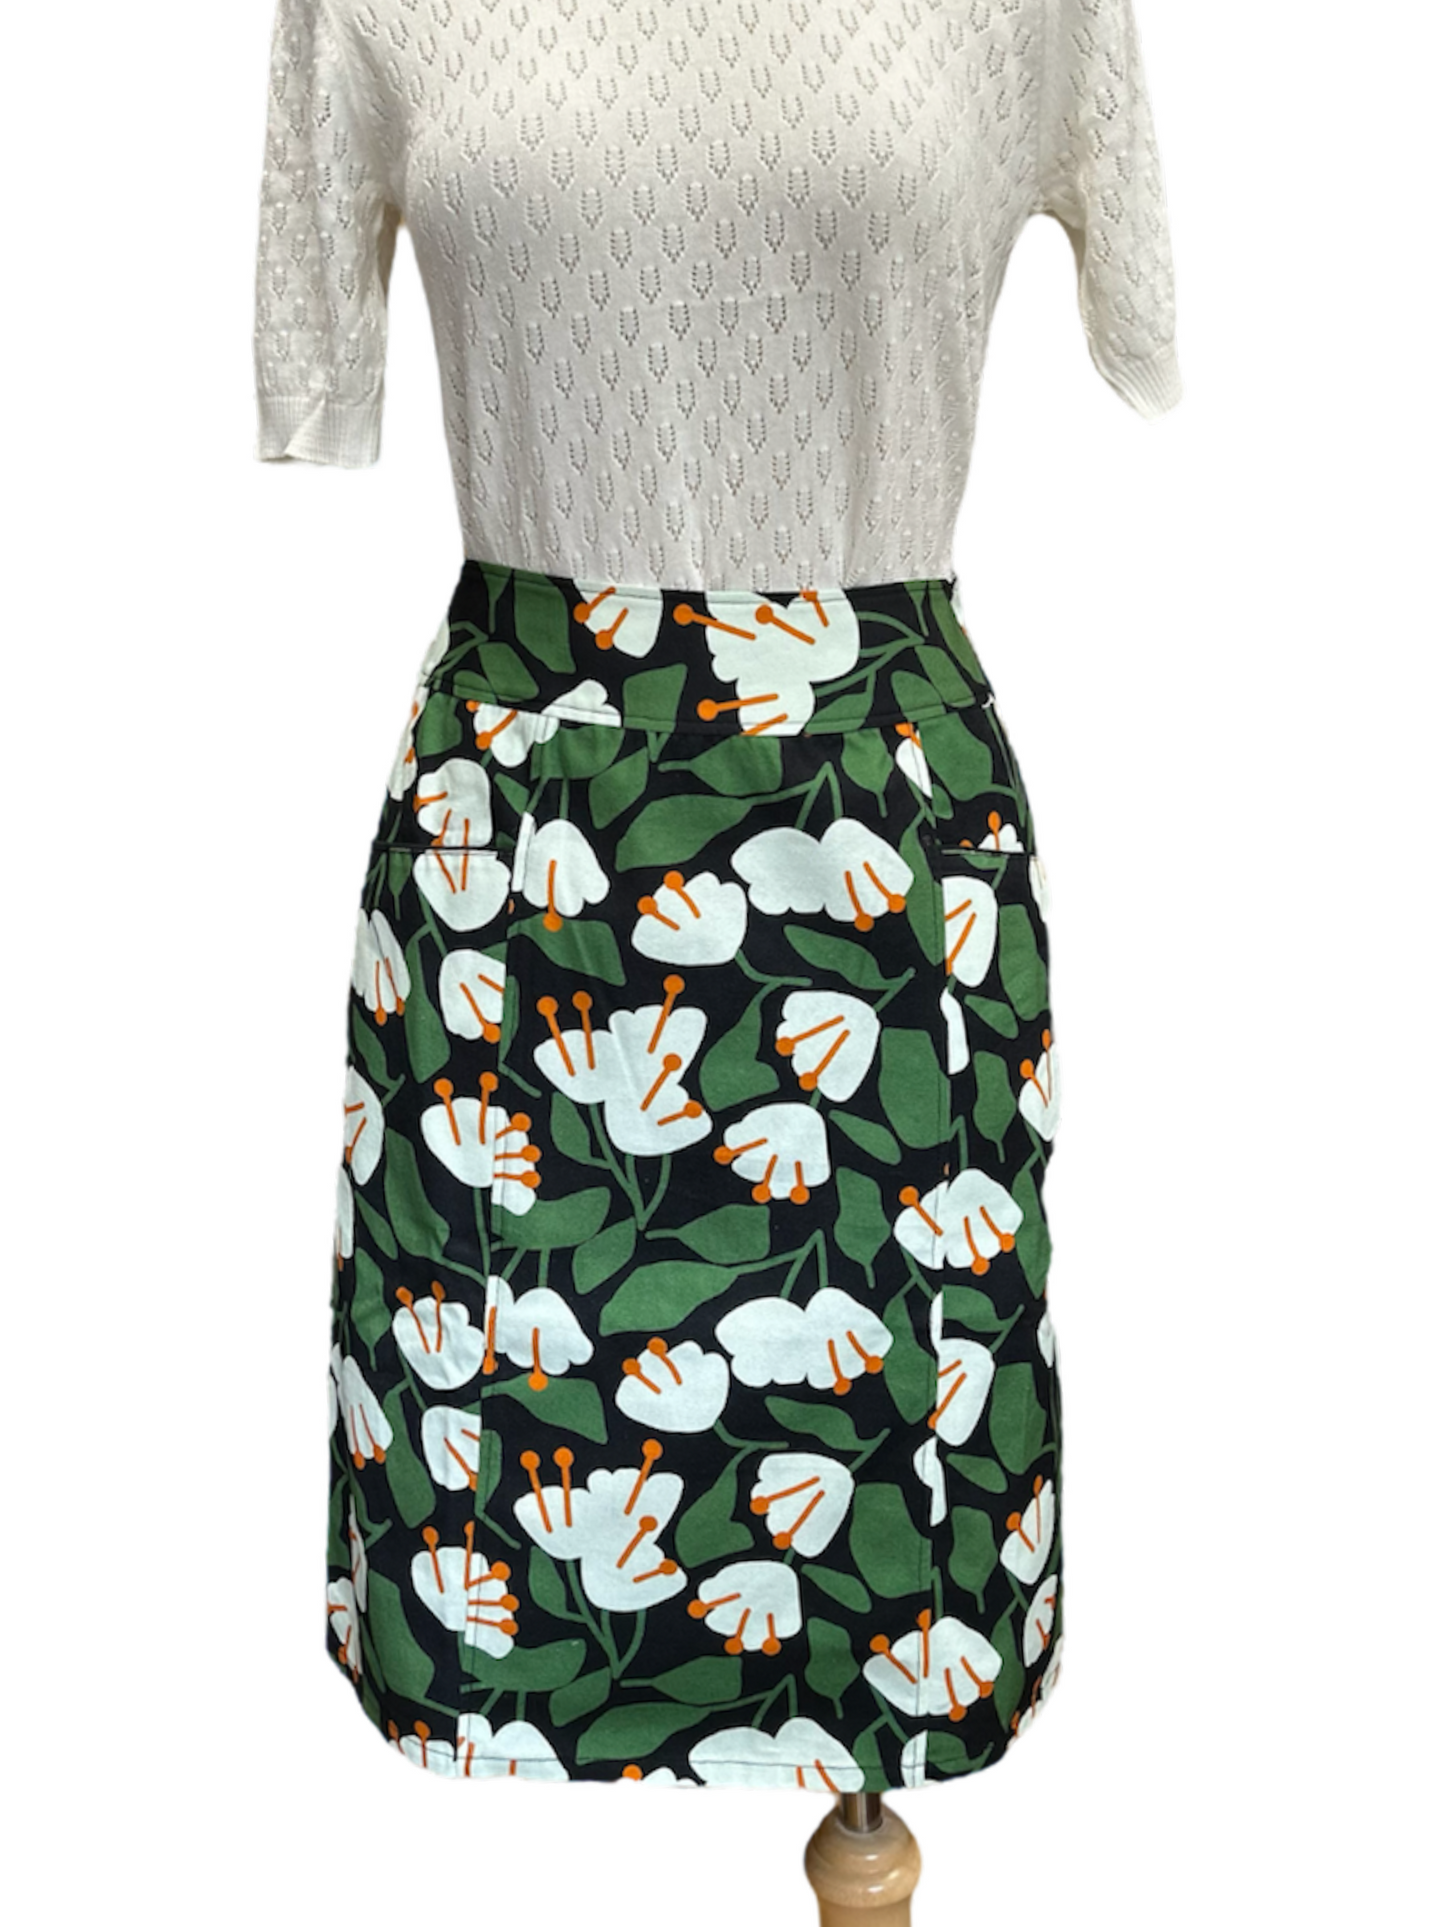 Farmer's Market Skirt - Floral